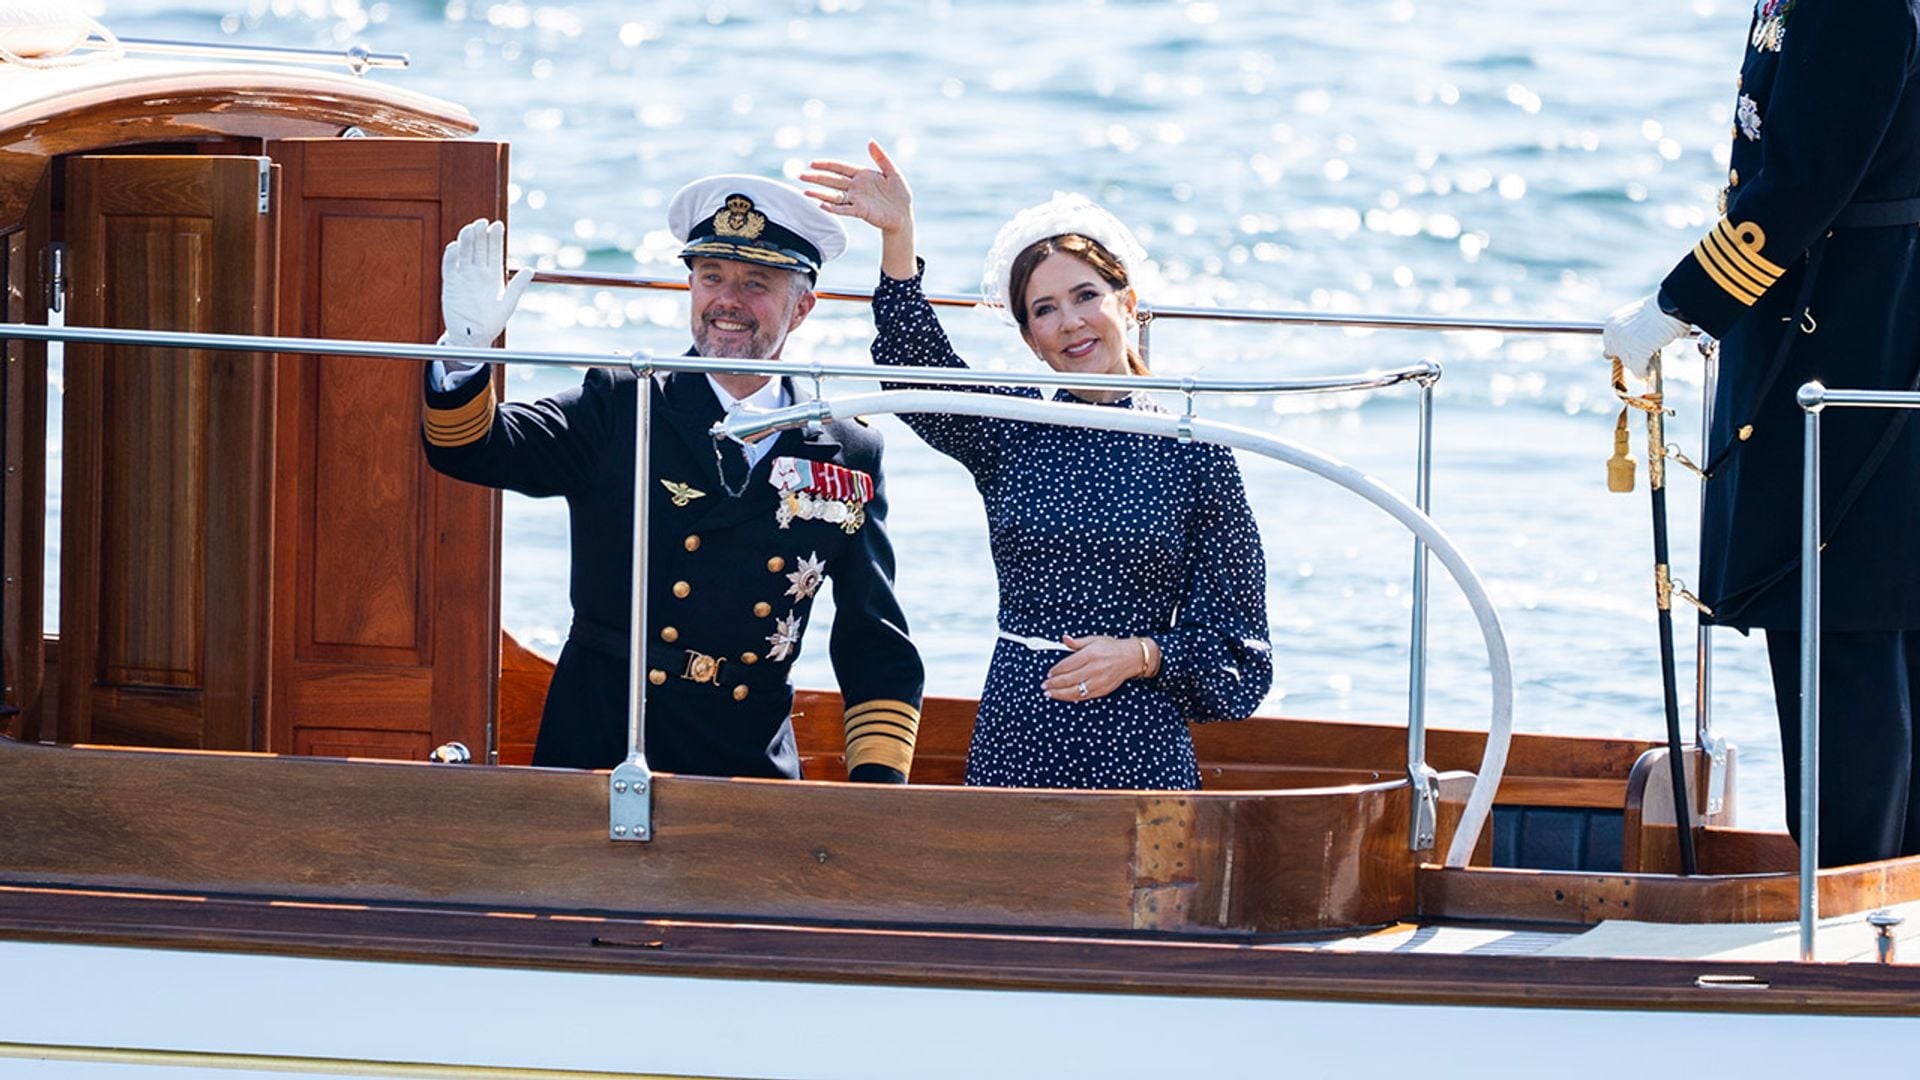 Los reyes Federico y Mary de Dinamarca emprenden su primera gira internacional a bordo del espectacular buque real Dannebrog